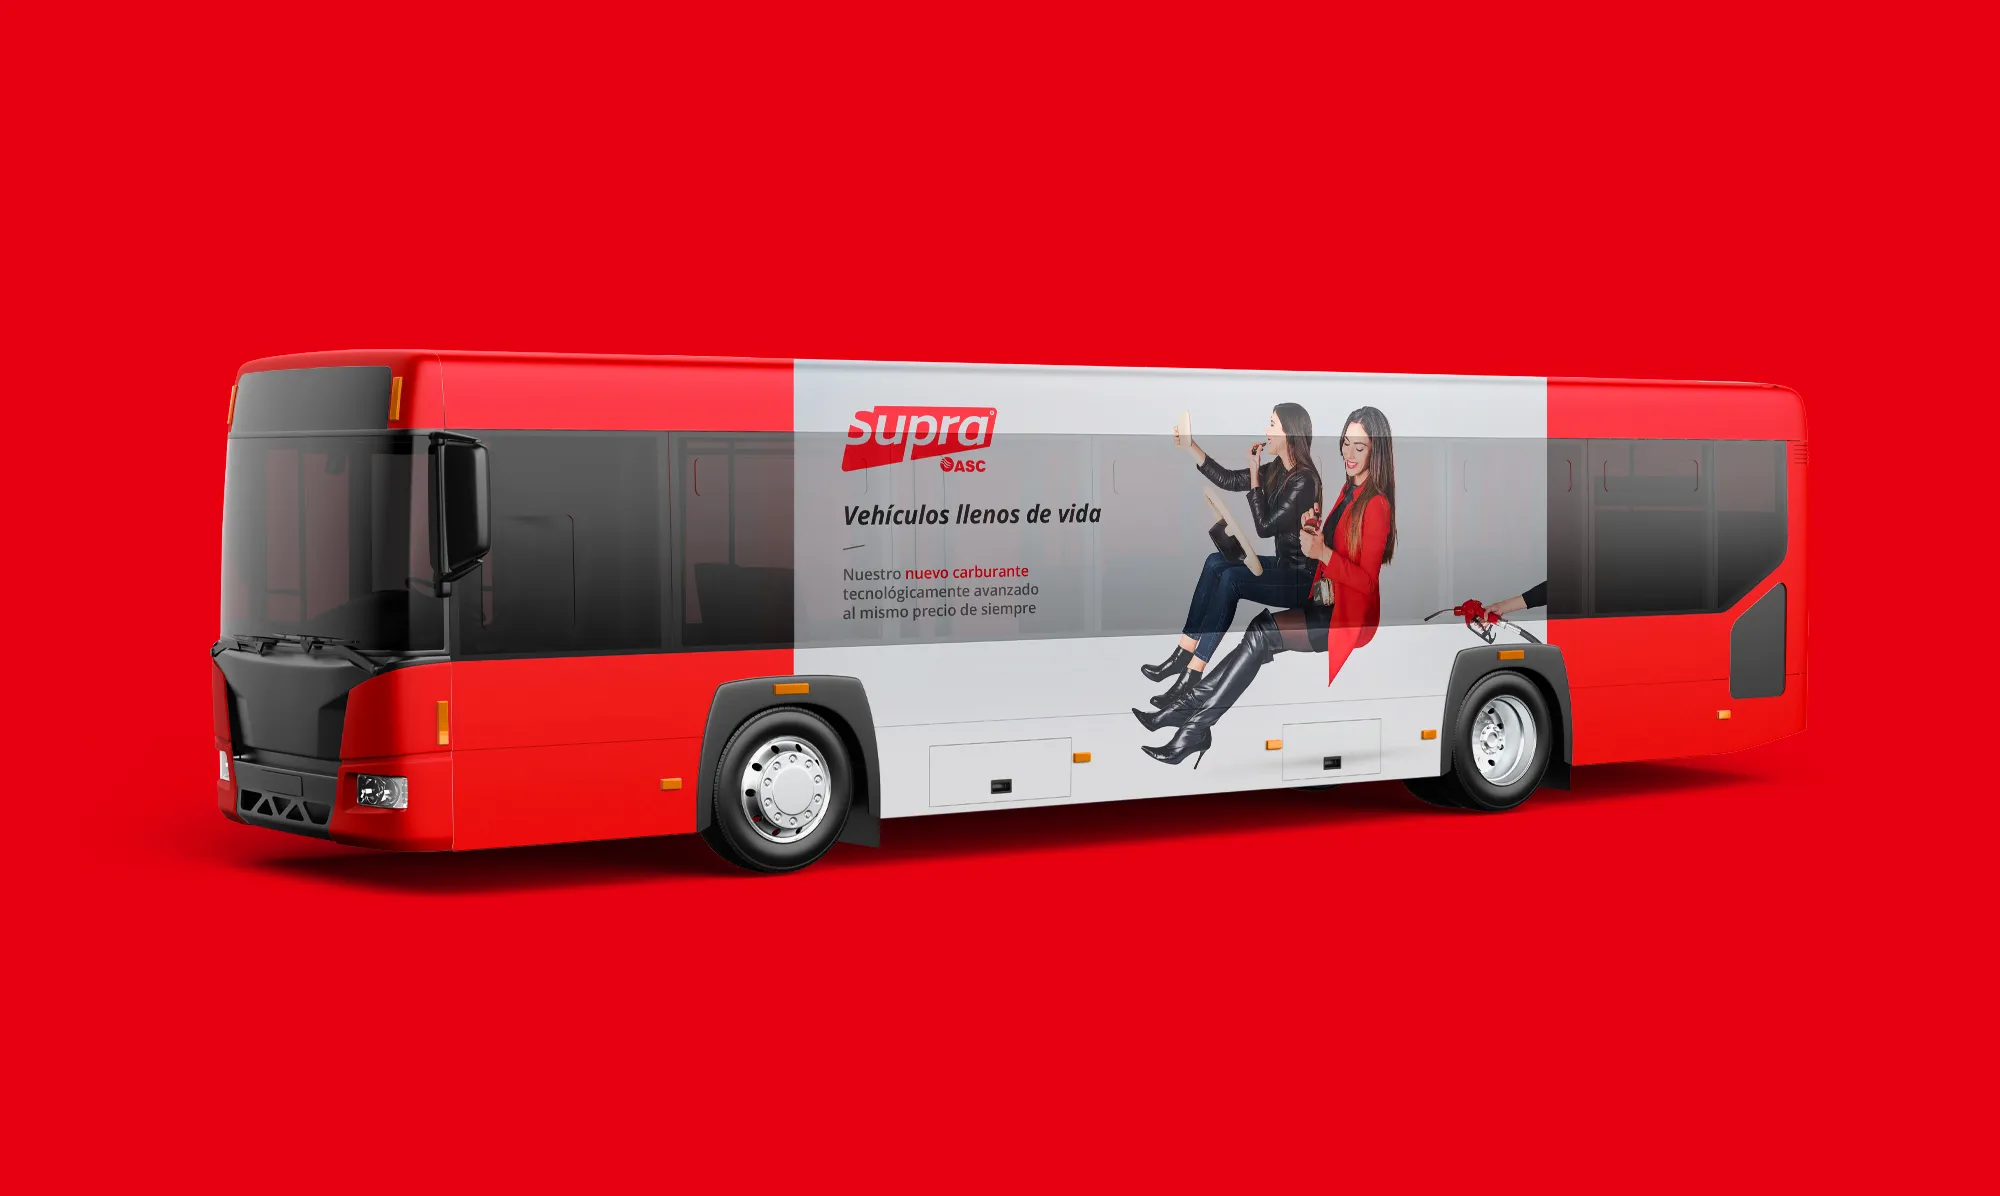 Autobus vinilado con campaña publicitaria Supra